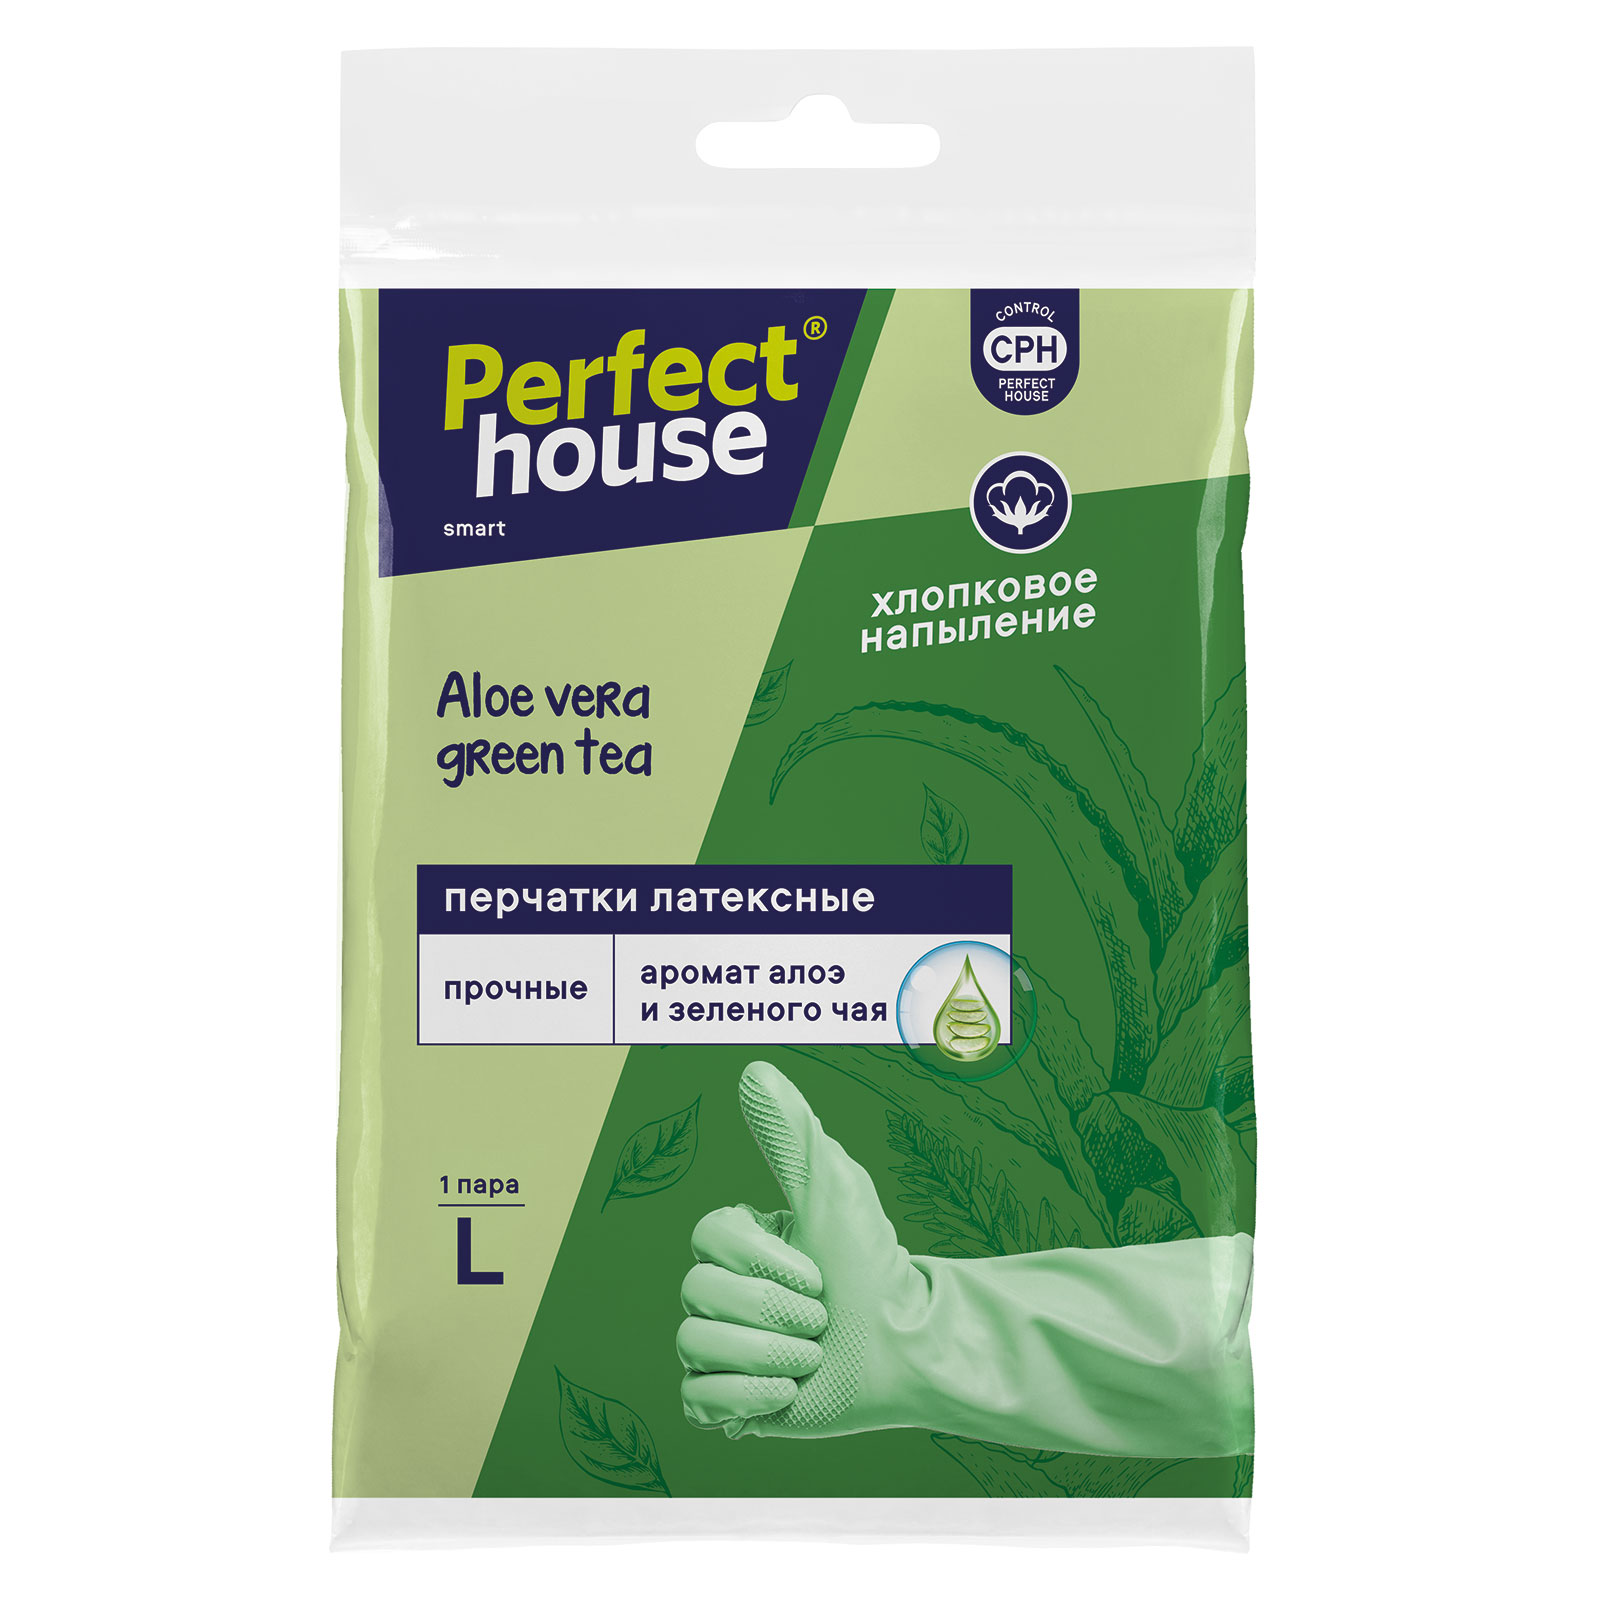 Перчатки с запахом Алое вера и зеленого чая, размер L Perfect House